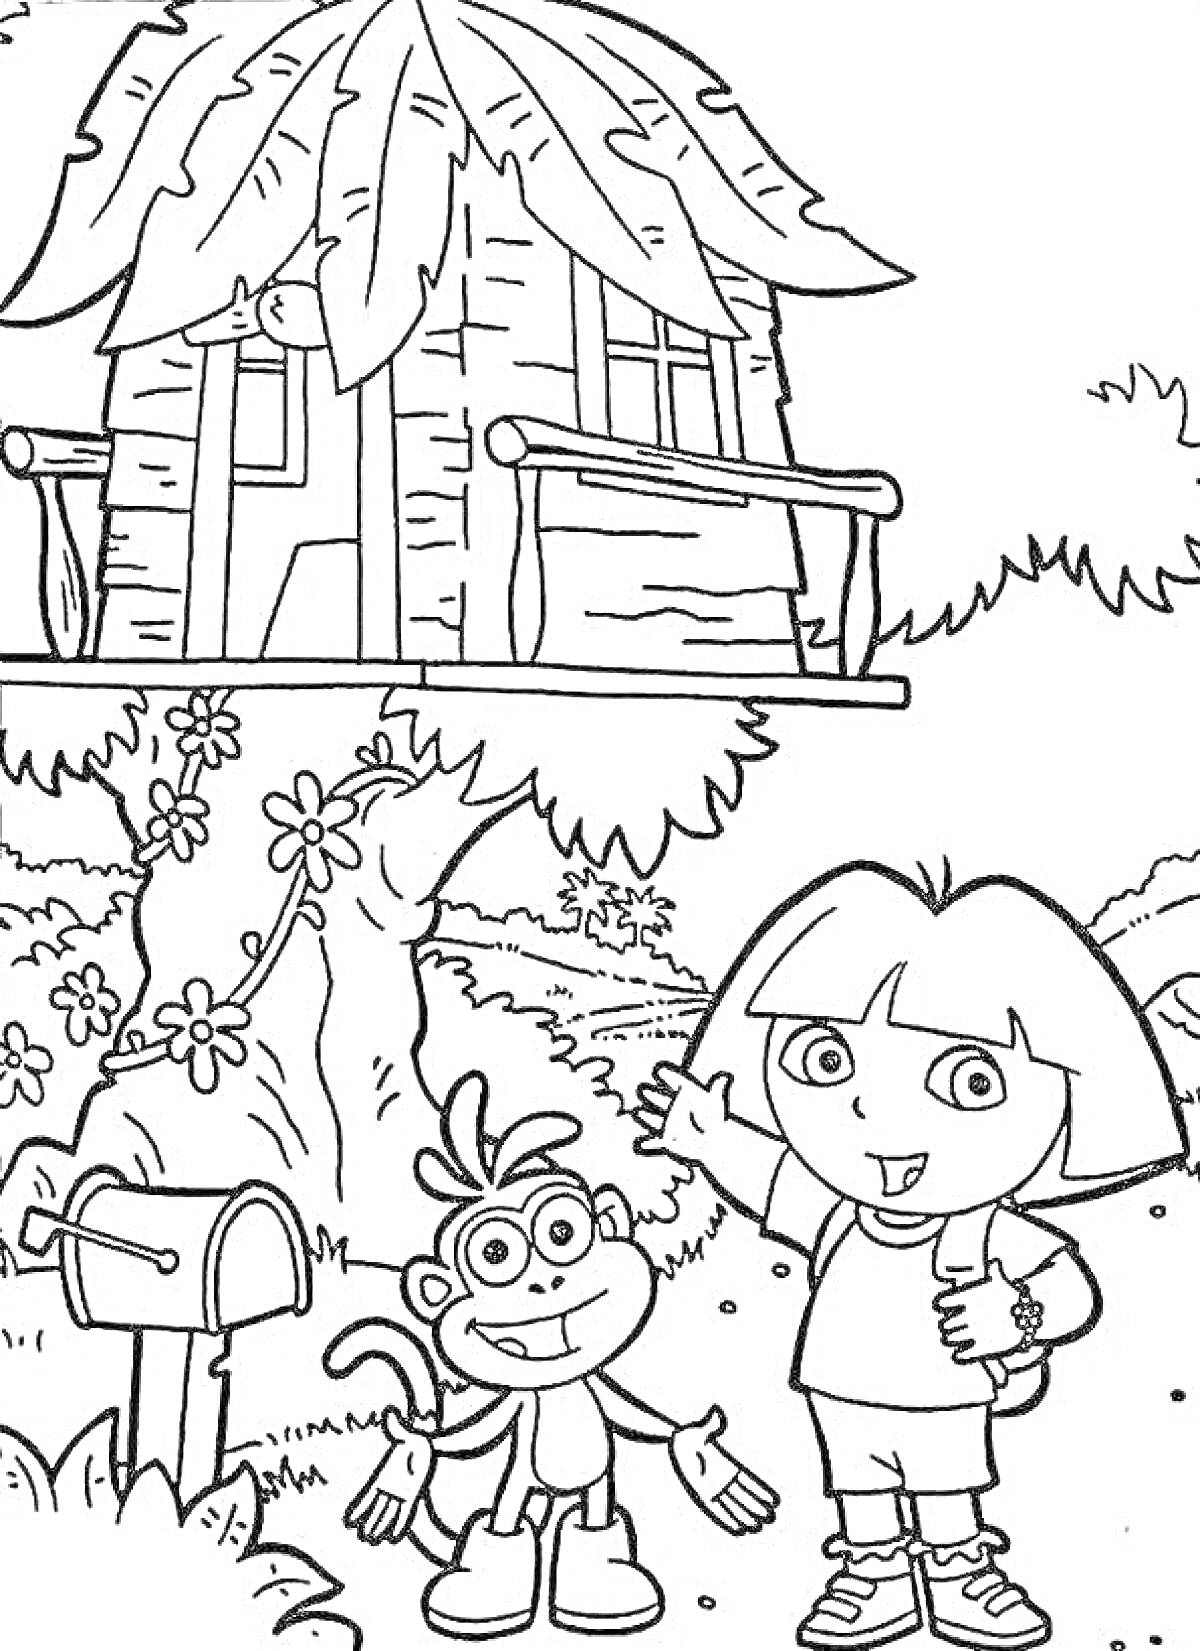 Дом на дереве с персонажами, почтовый ящик, обезьянка, девочка с рюкзаком, цветы, кусты